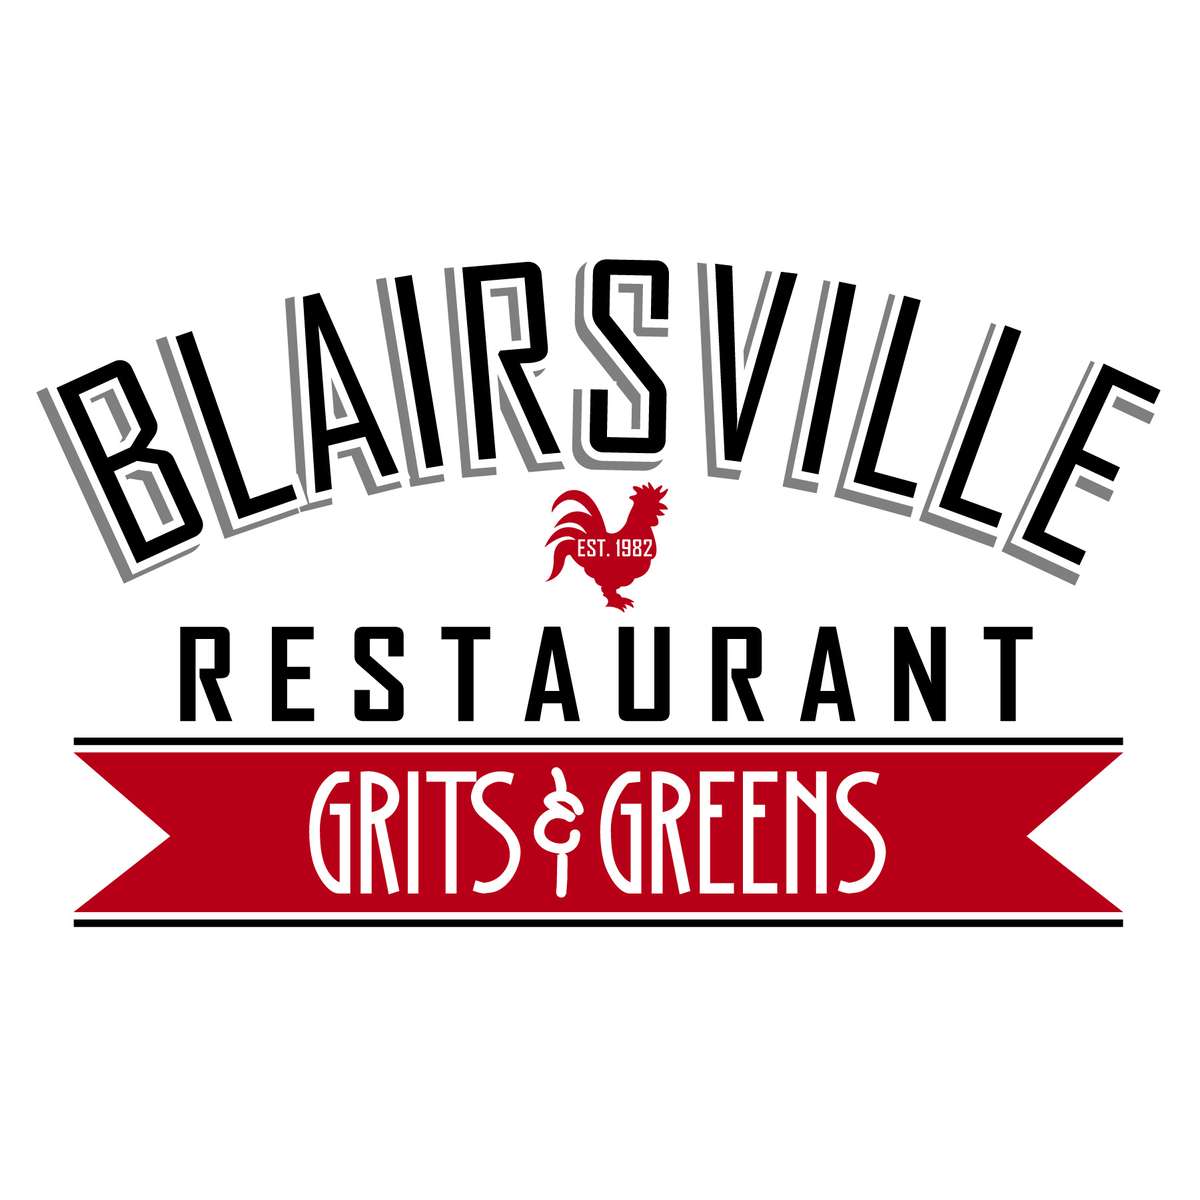 Blairsville Restaurant